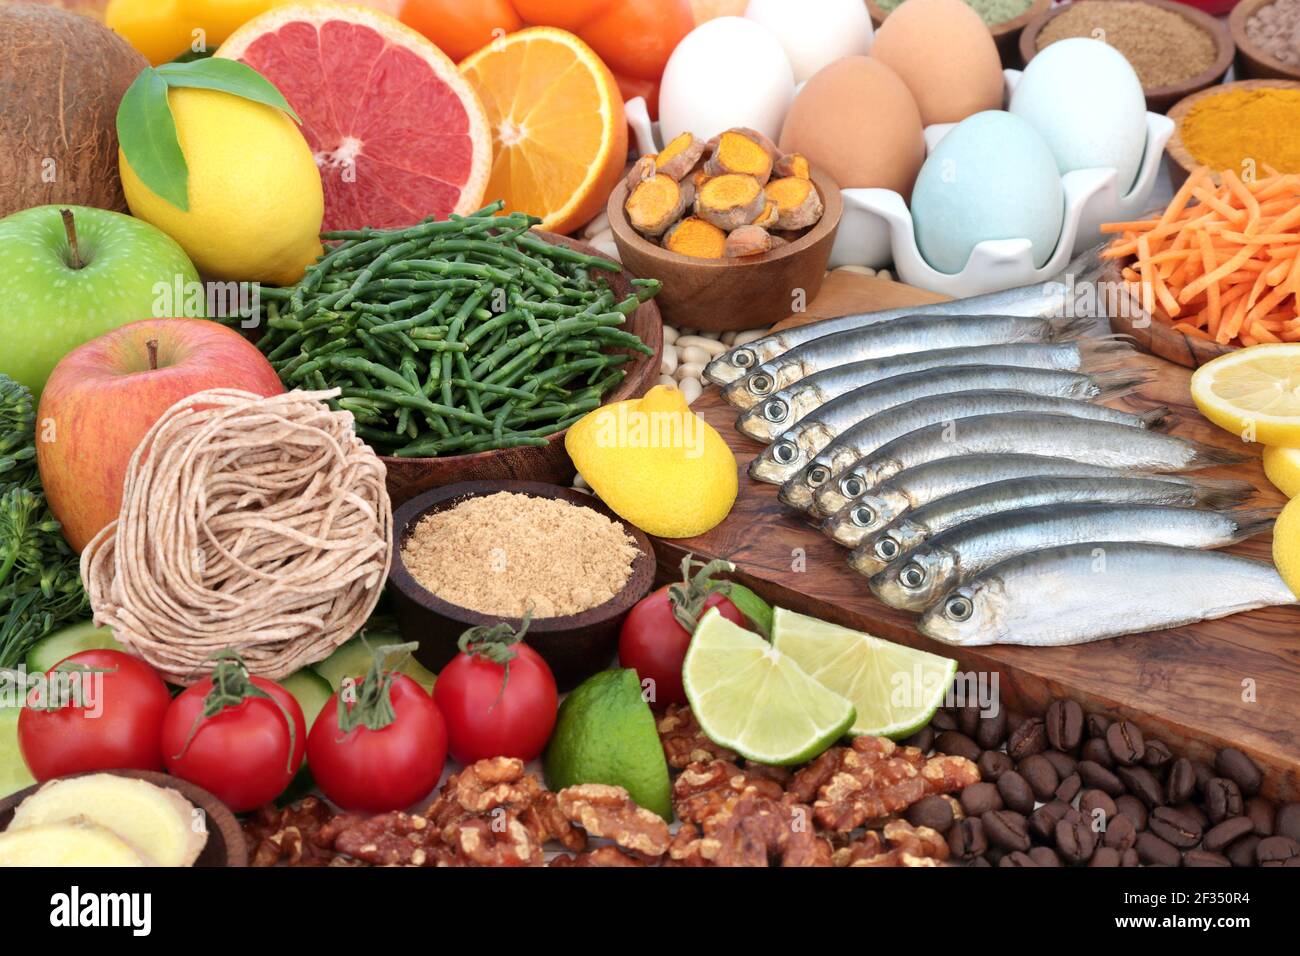 Cibo sano per aumentare il sistema immunitario alto in antiossidanti, proteine, omega 3, vitamine, minerali, licopene, antocianine e fibra. Foto Stock